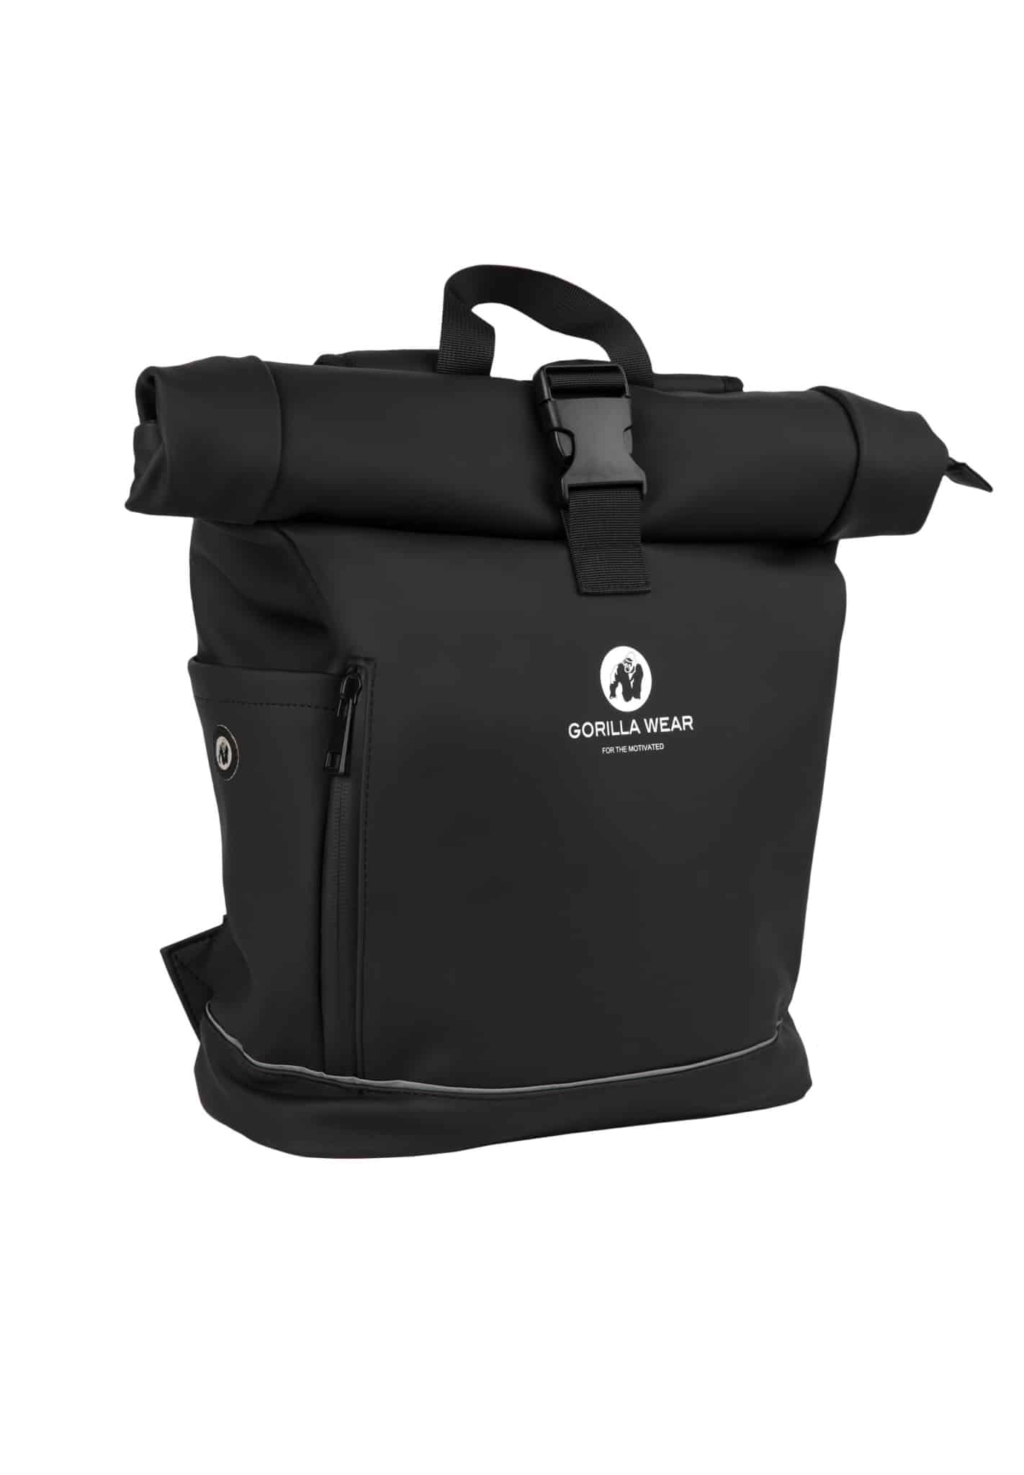 9920790009 albany backpack black 01 scaled